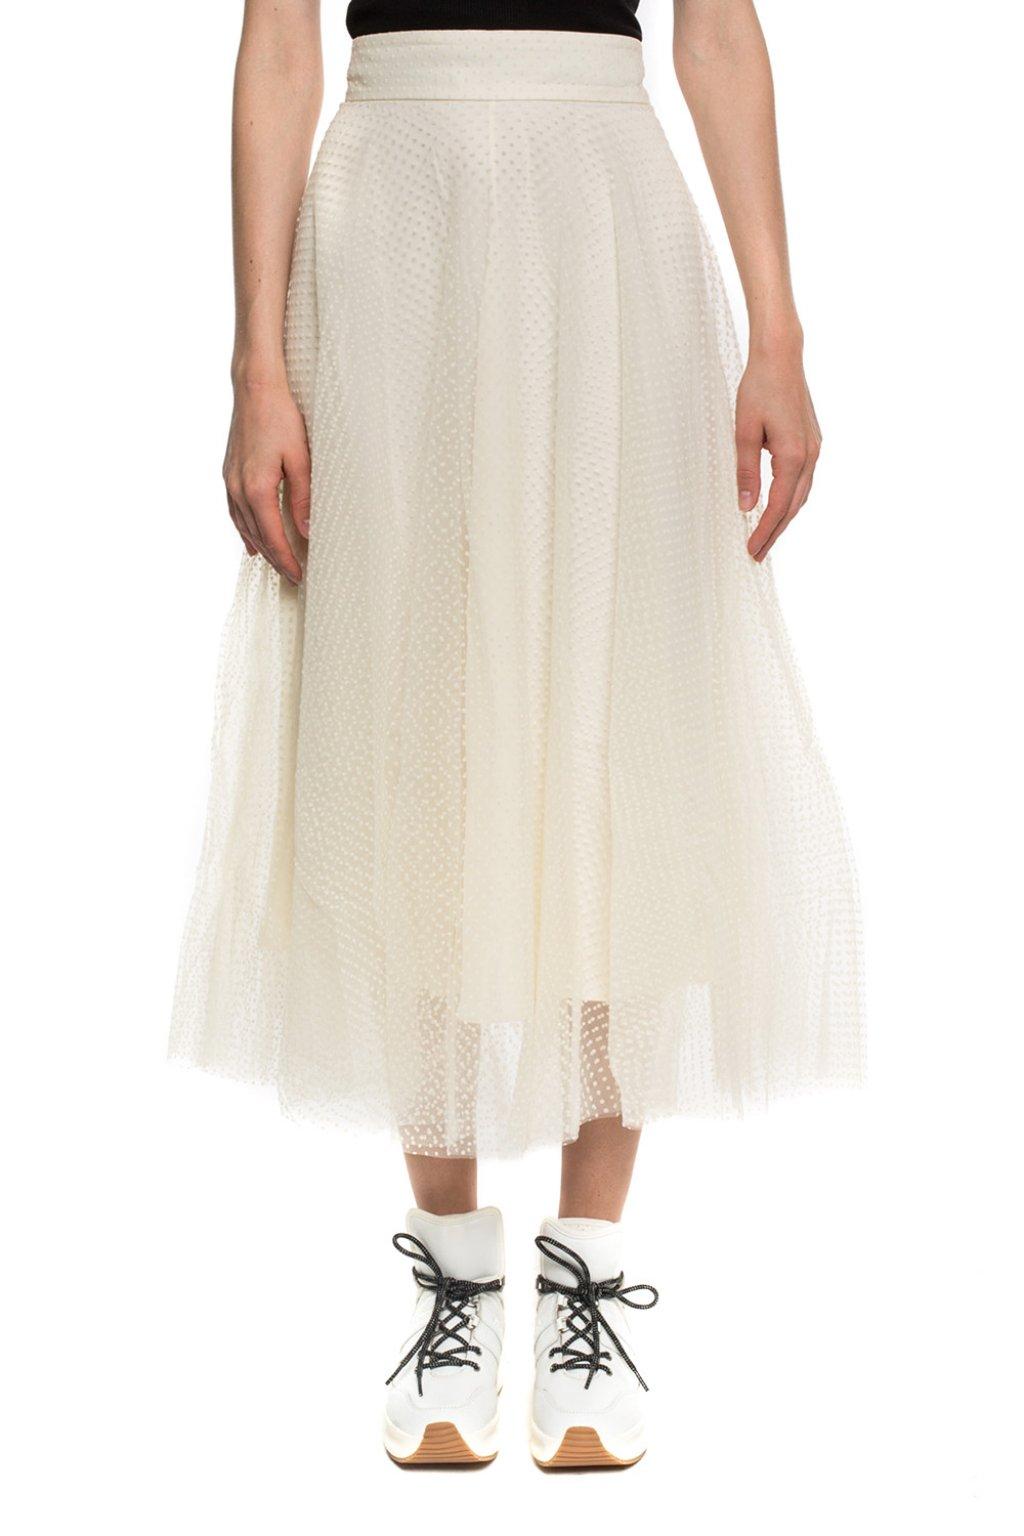 Zimmermann Tulle Skirt in Cream (Natural) - Lyst